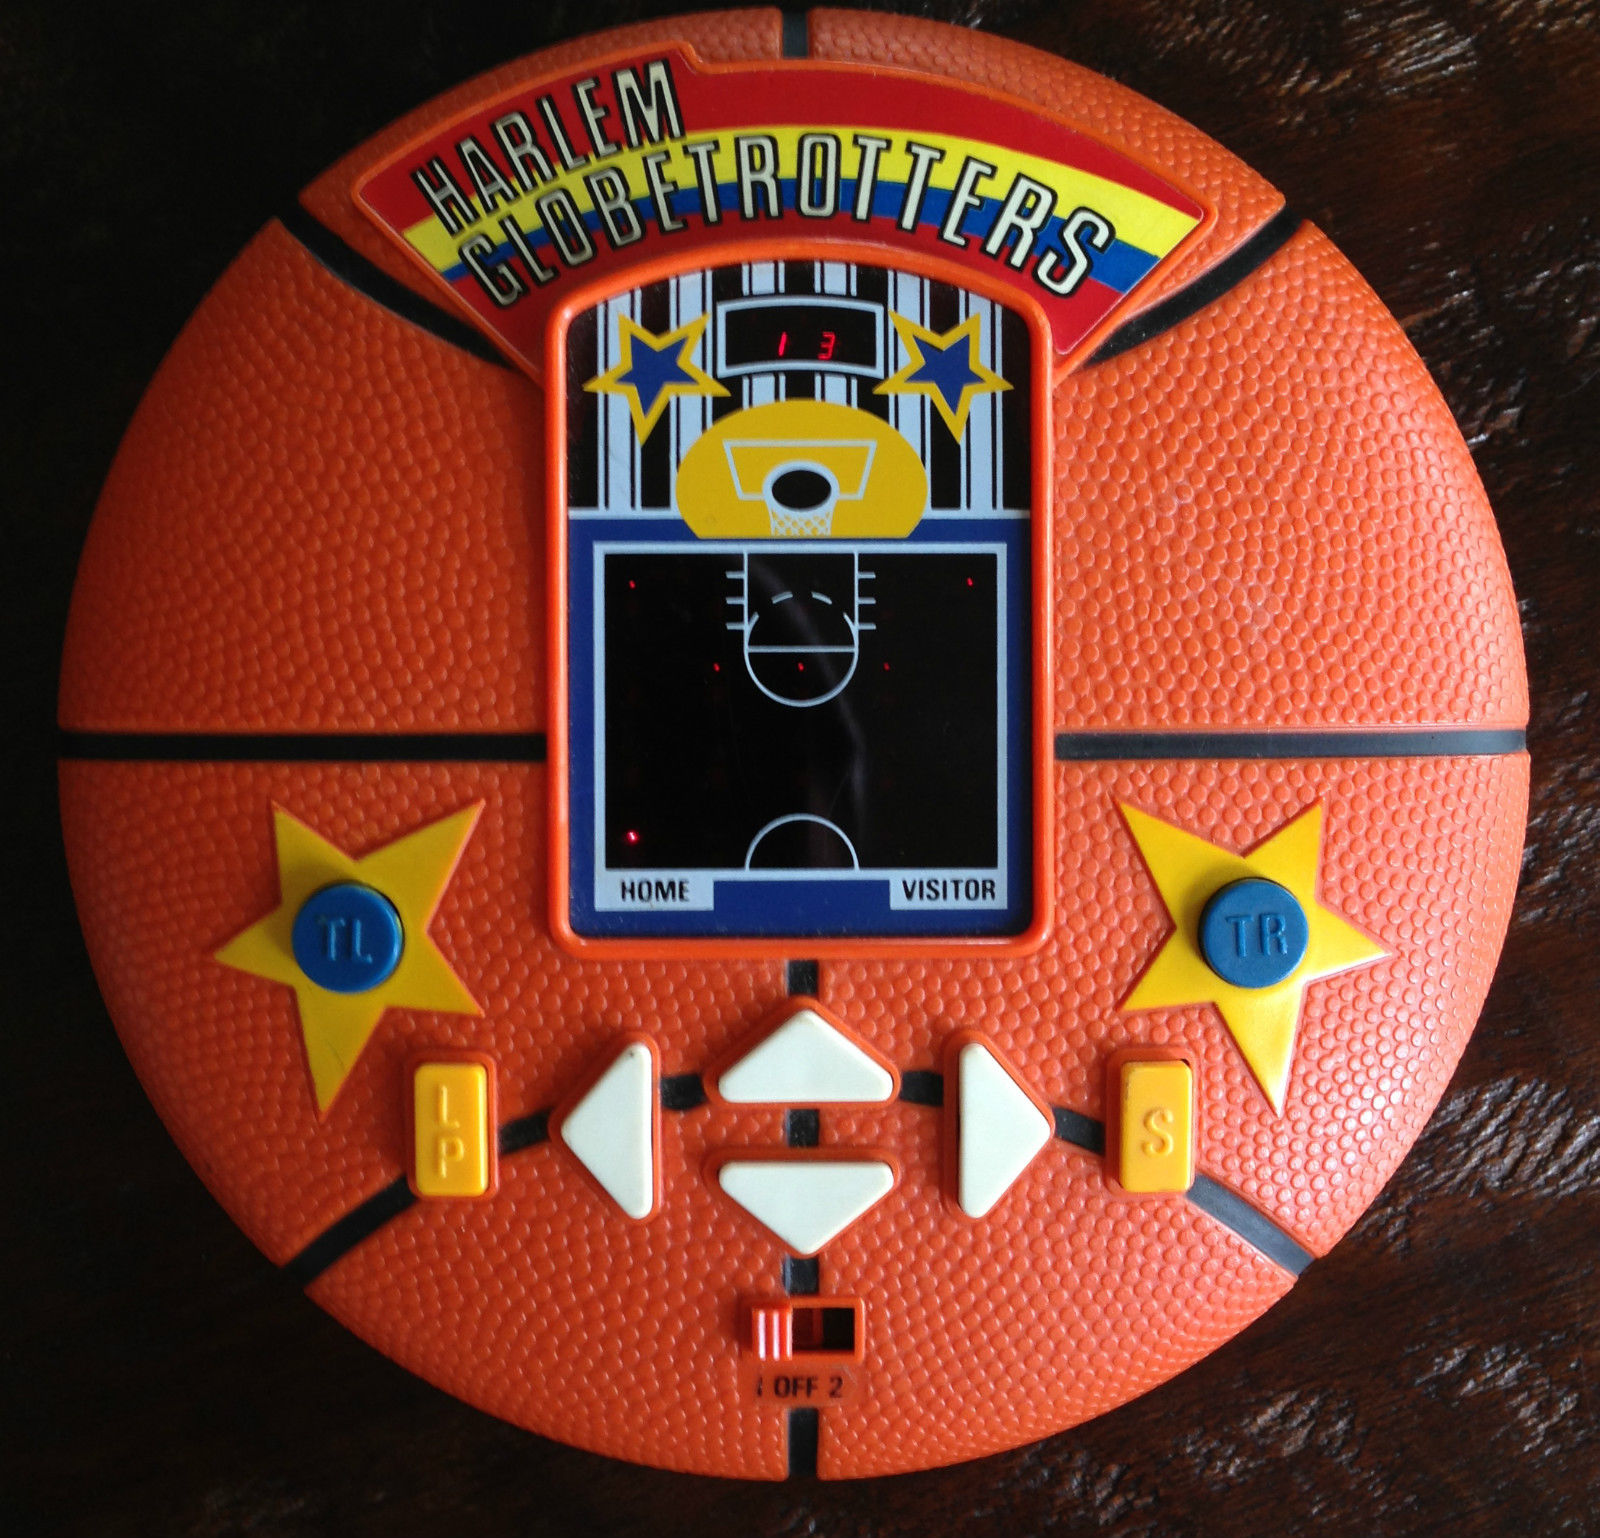 udsultet Turbine Bemærkelsesværdig syltefar.com: Harlem Globetrotters Basketball (Custom Handheld)